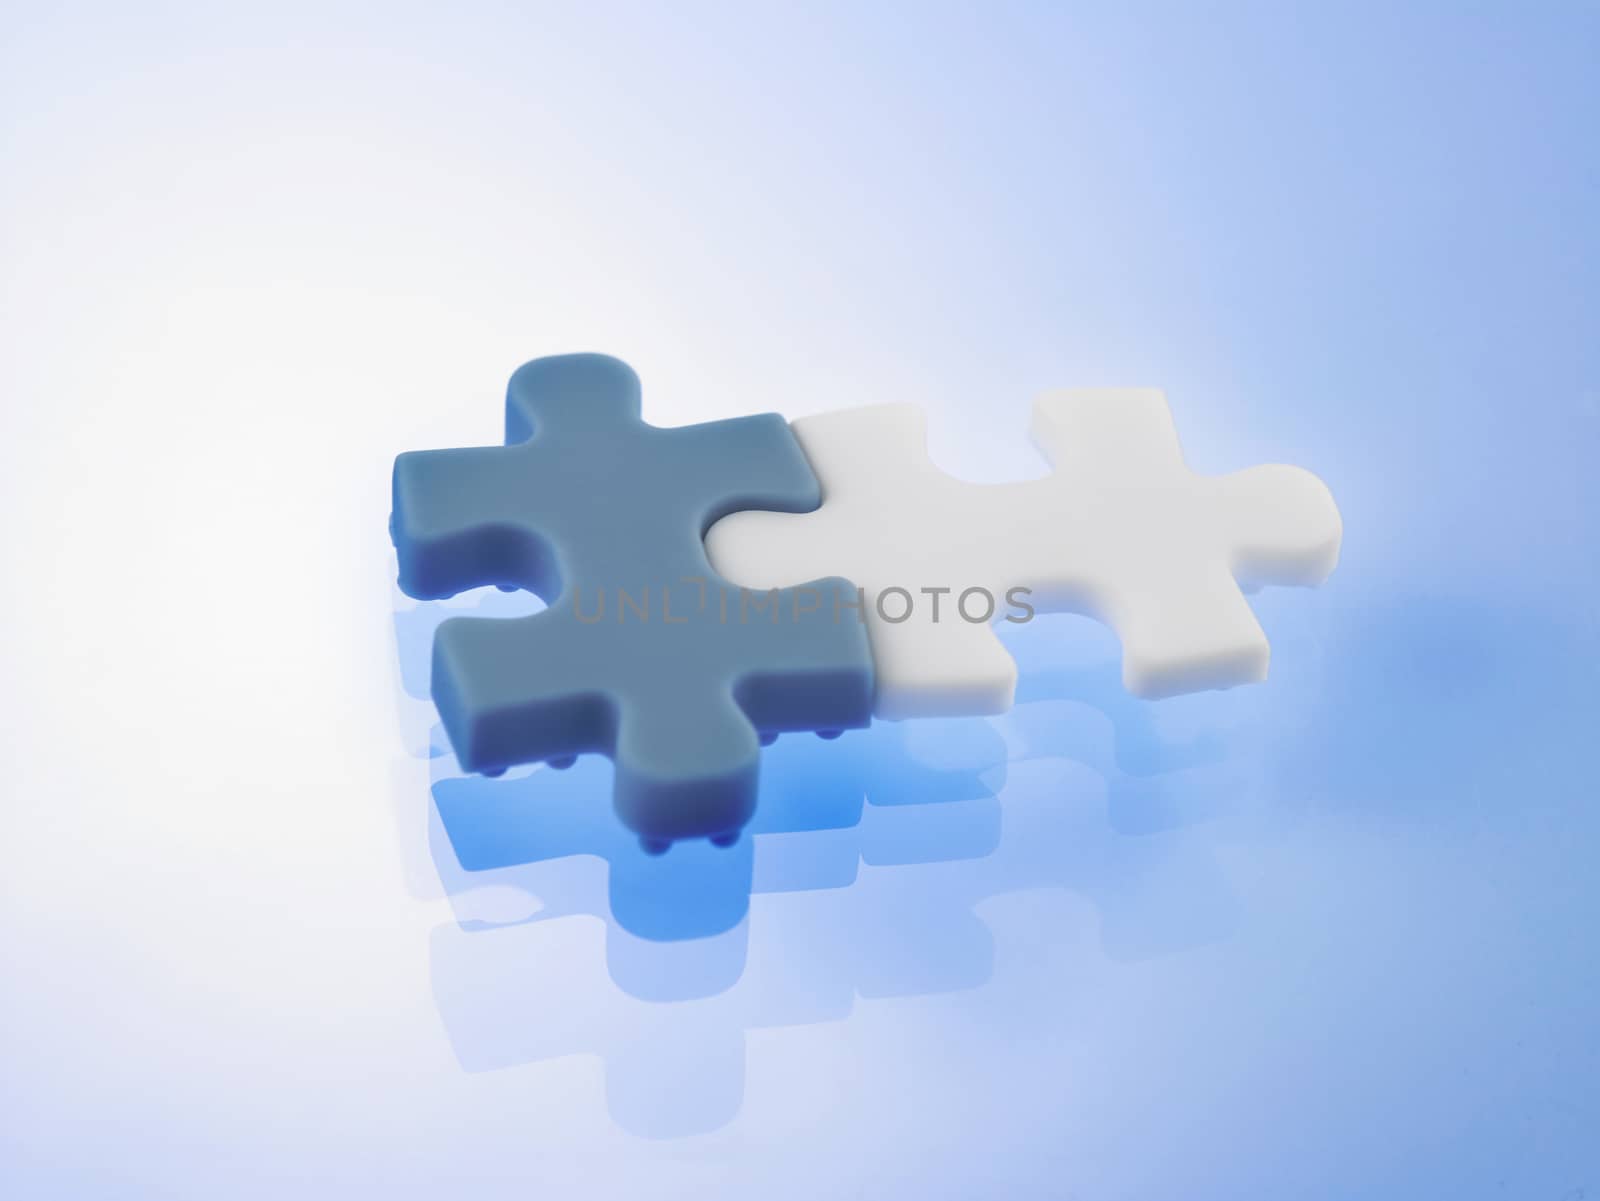 jigsaw puzzle by eskaylim